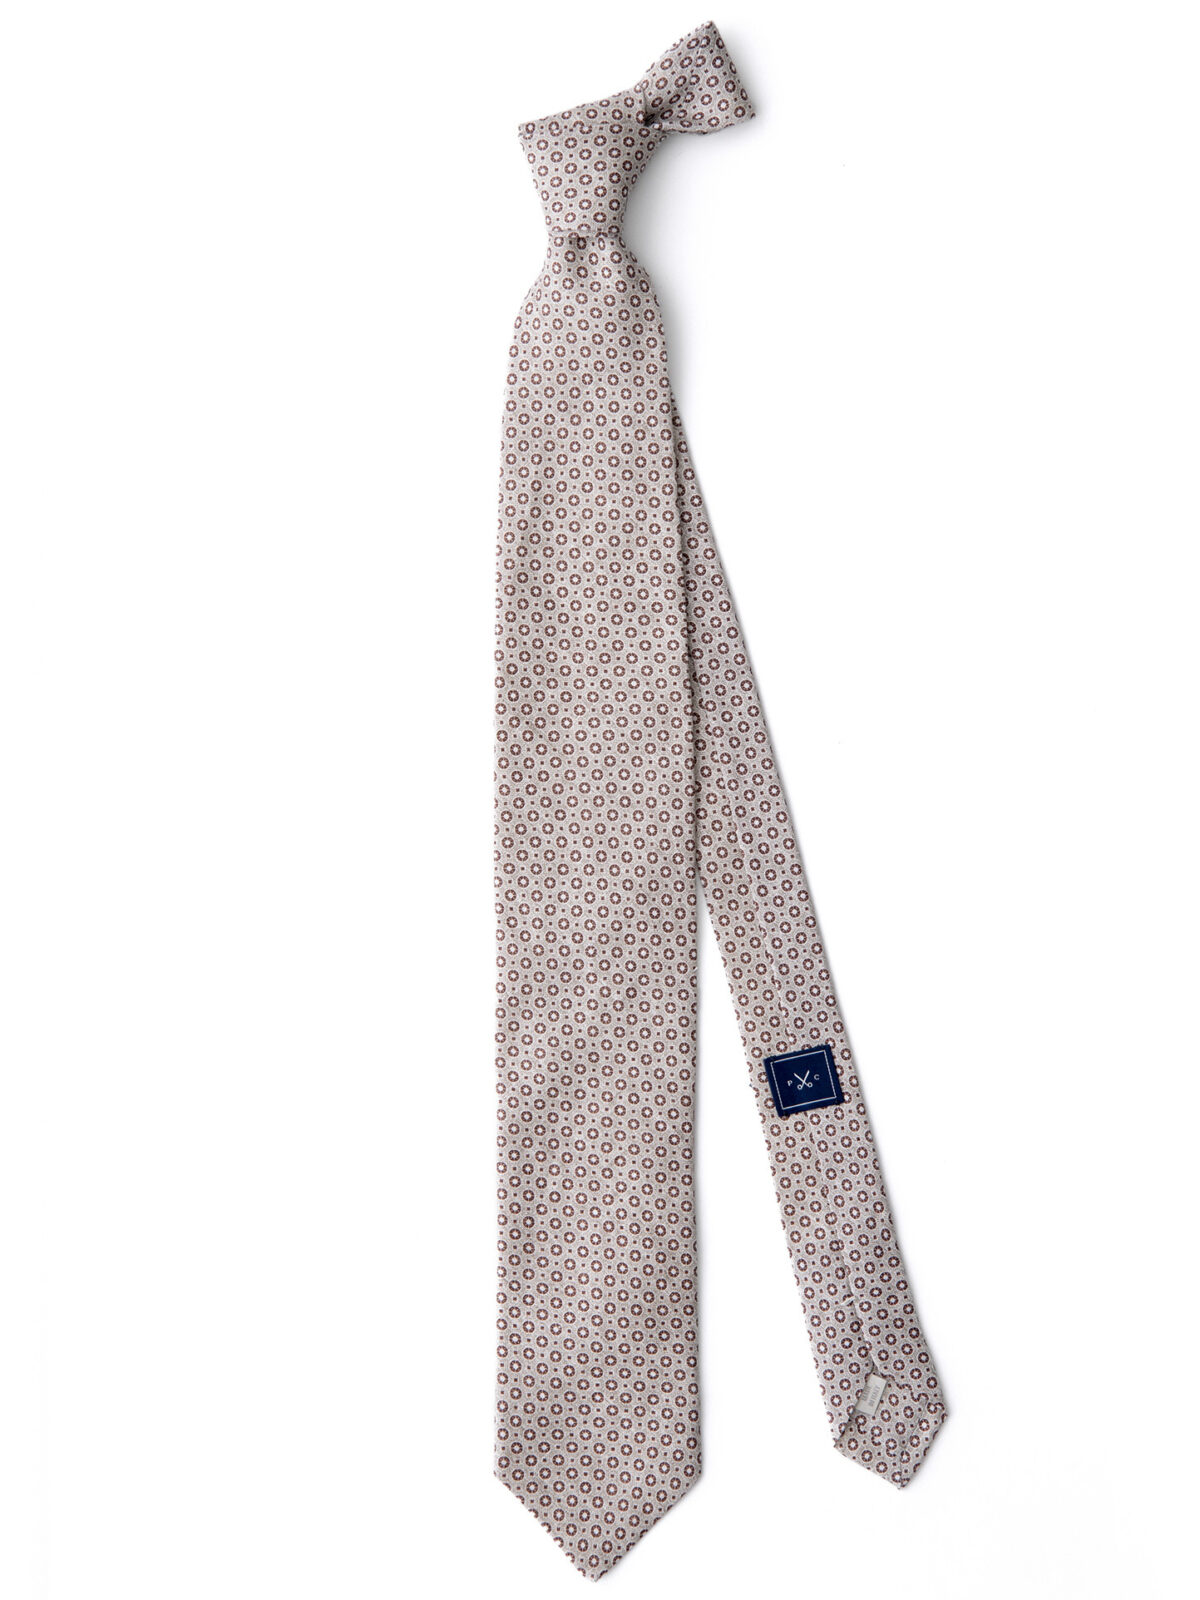 Beige Medallion Print Linen Tie